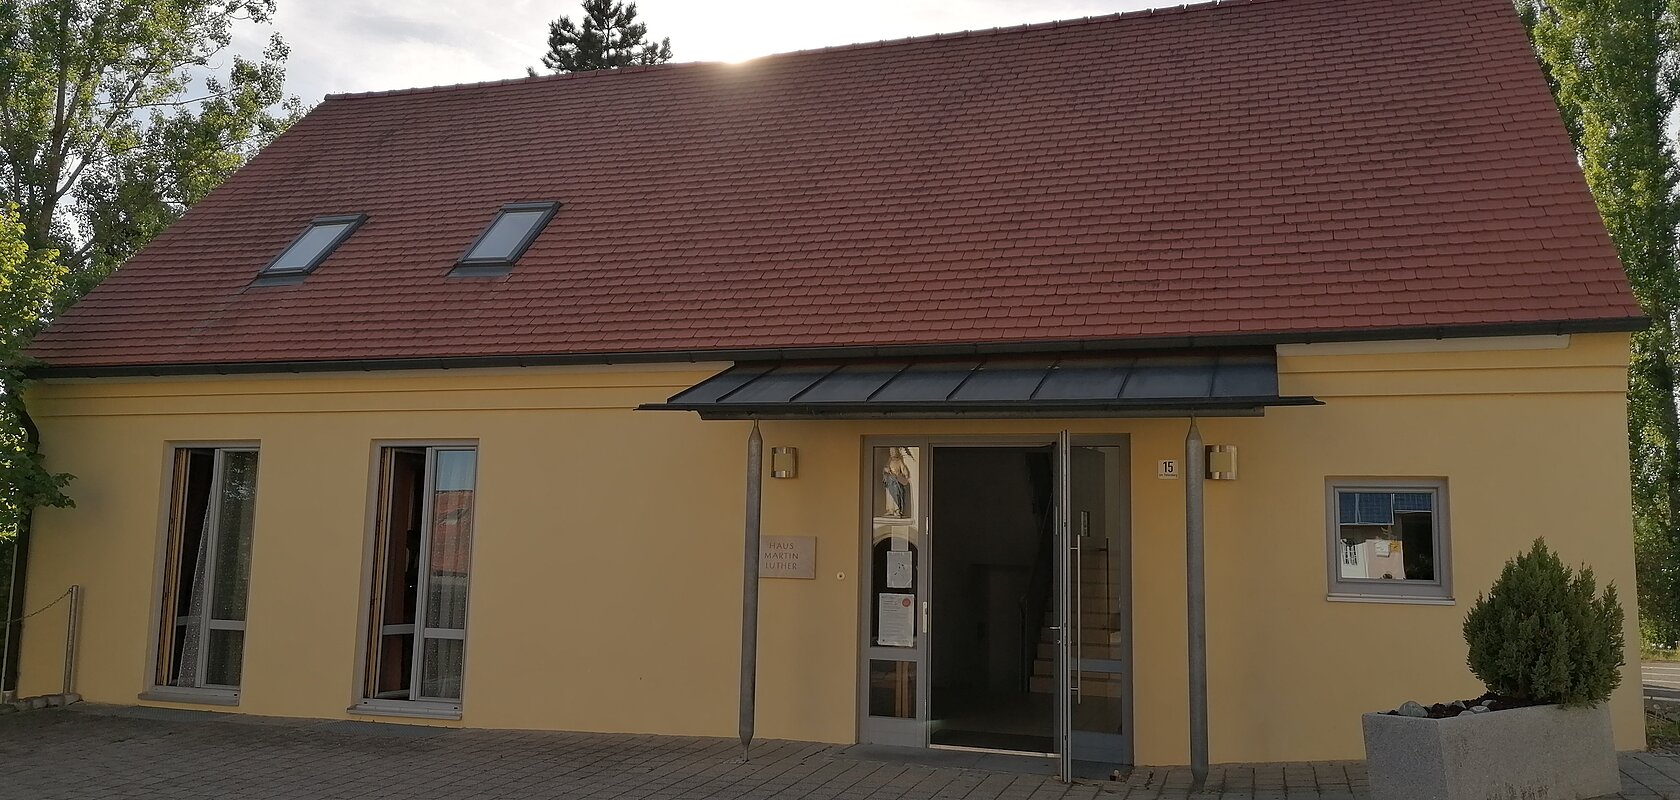 Haus Martin Luther in Monheim - Evangelisches Gemeindehaus